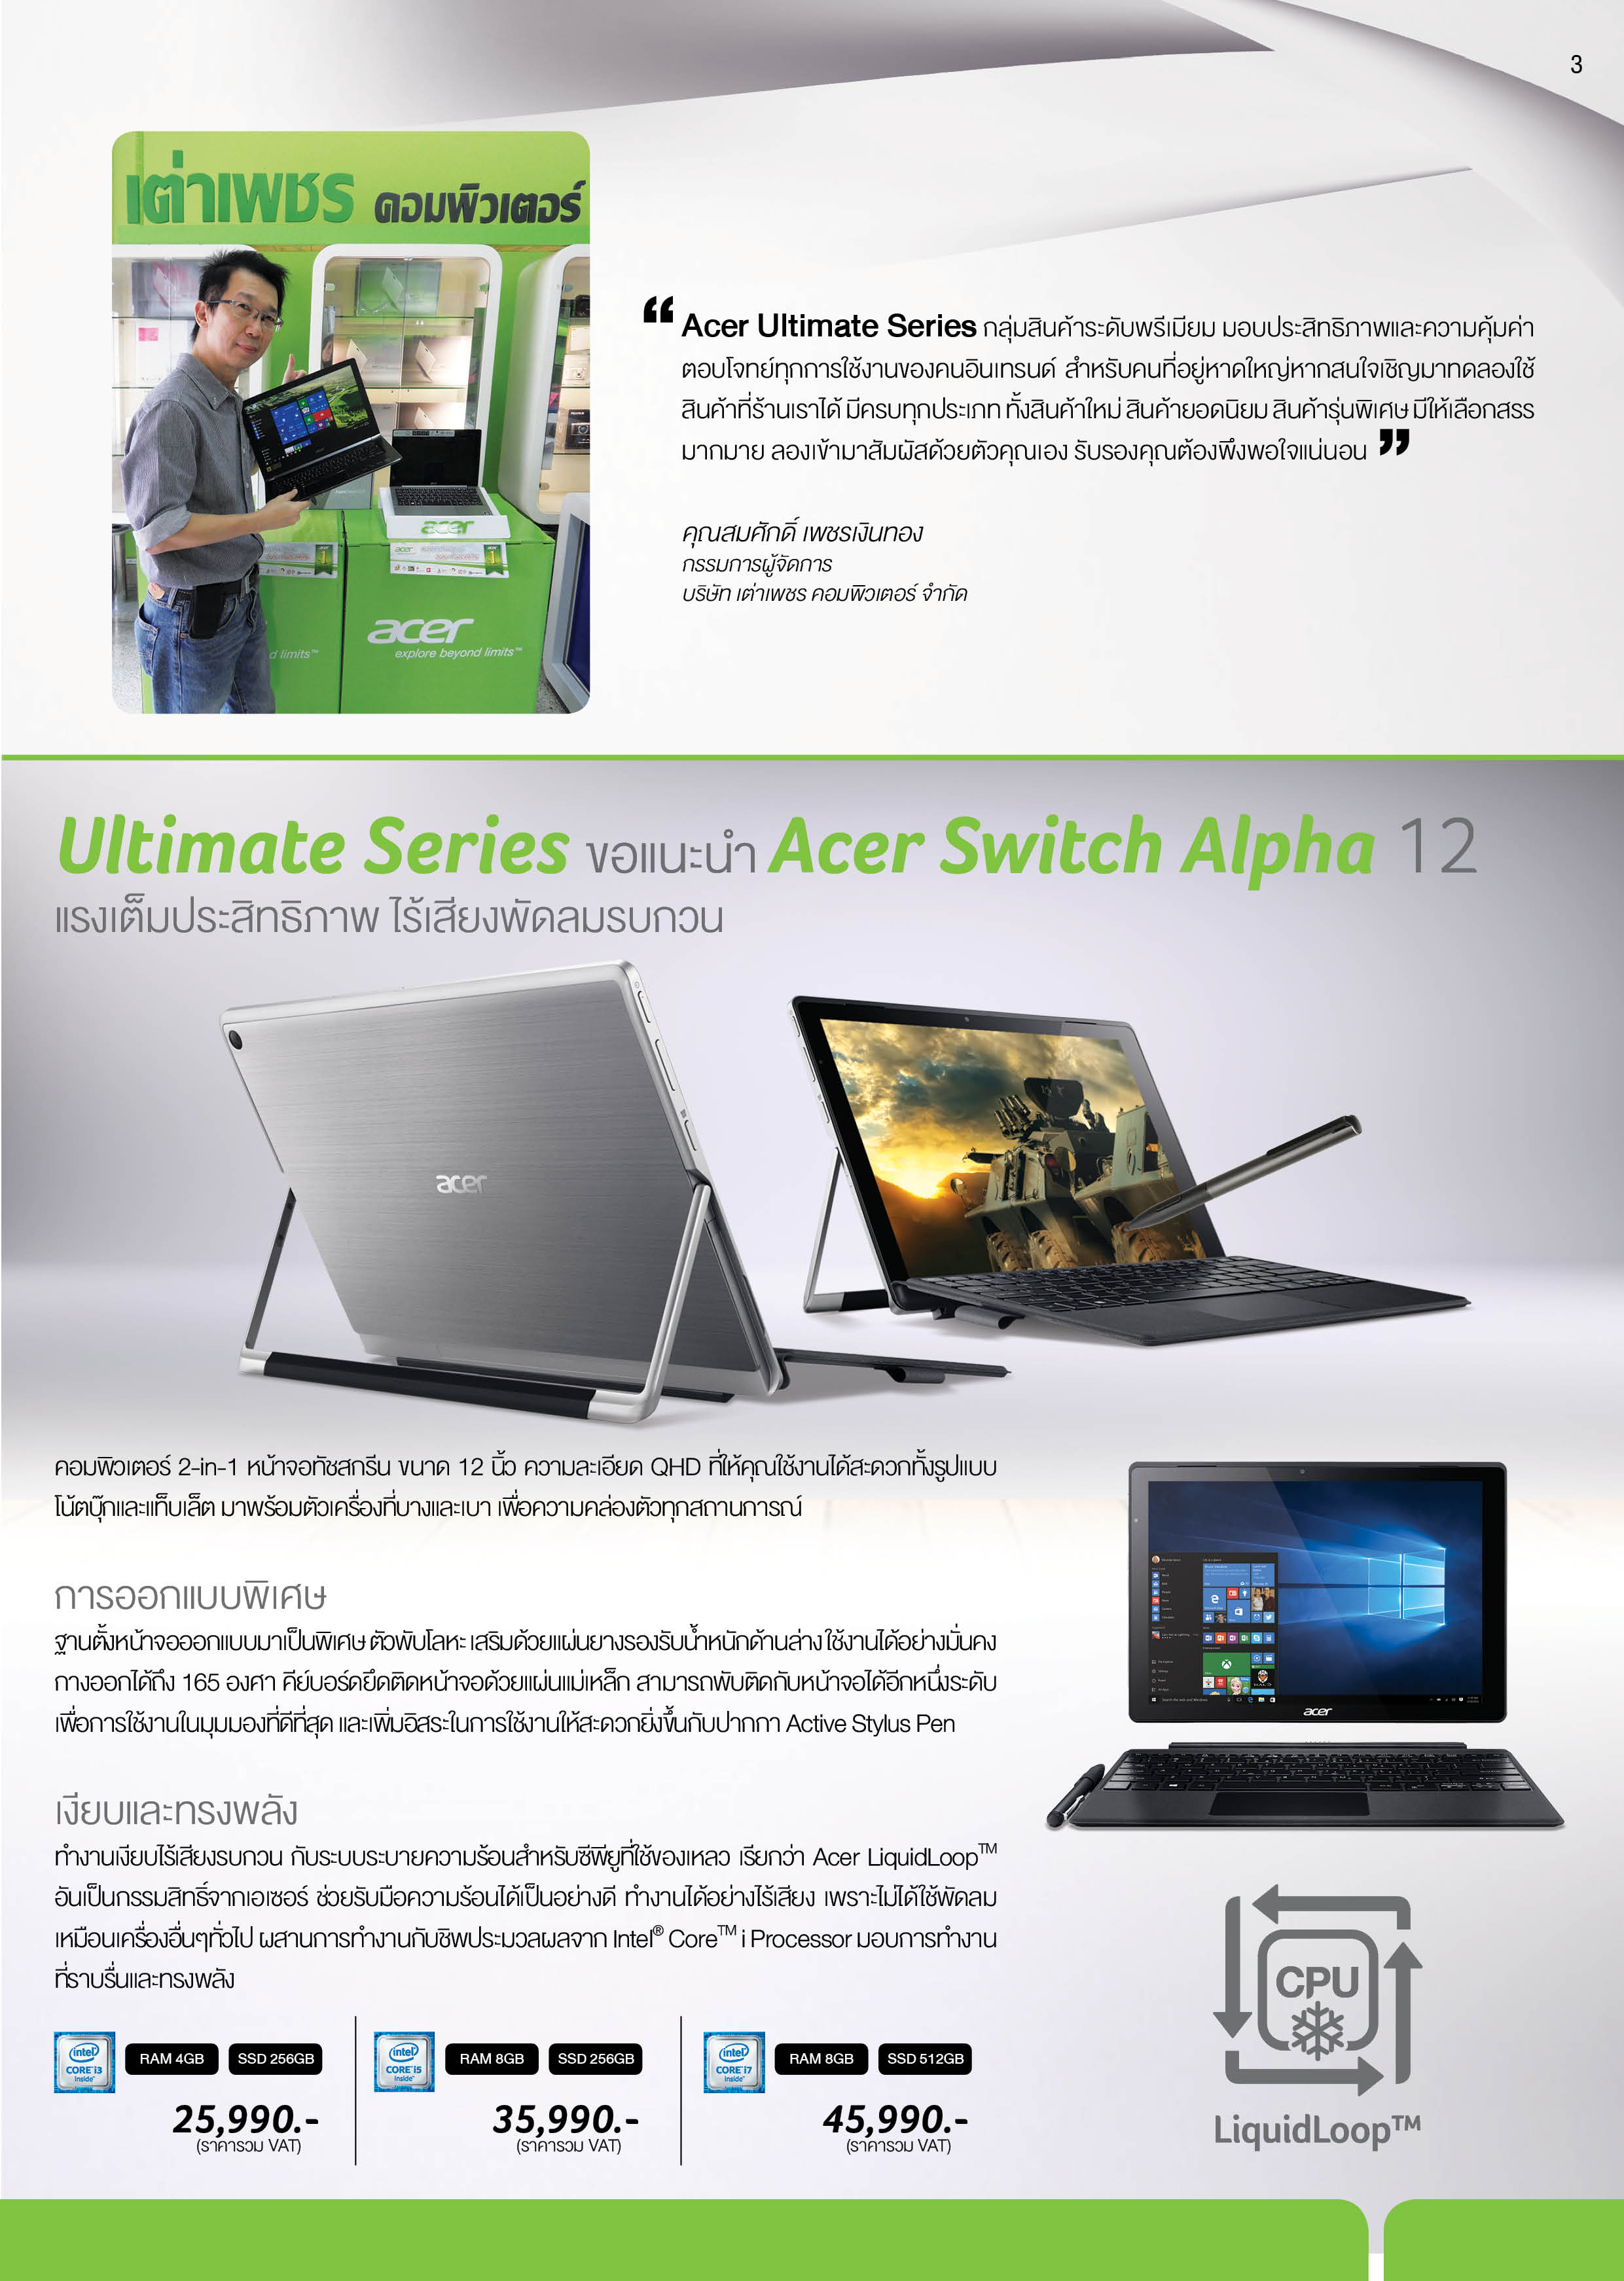 alpha12 Acer เอเซอร์เปิดตัวพรีเมียมโน้ตบุ๊ค 4 รุ่น จับเทรนด์คนรุ่นใหม่ เน้นนวัตกรรมการใช้งานผสานดีไซน์ ในสไตล์ “Just For You”